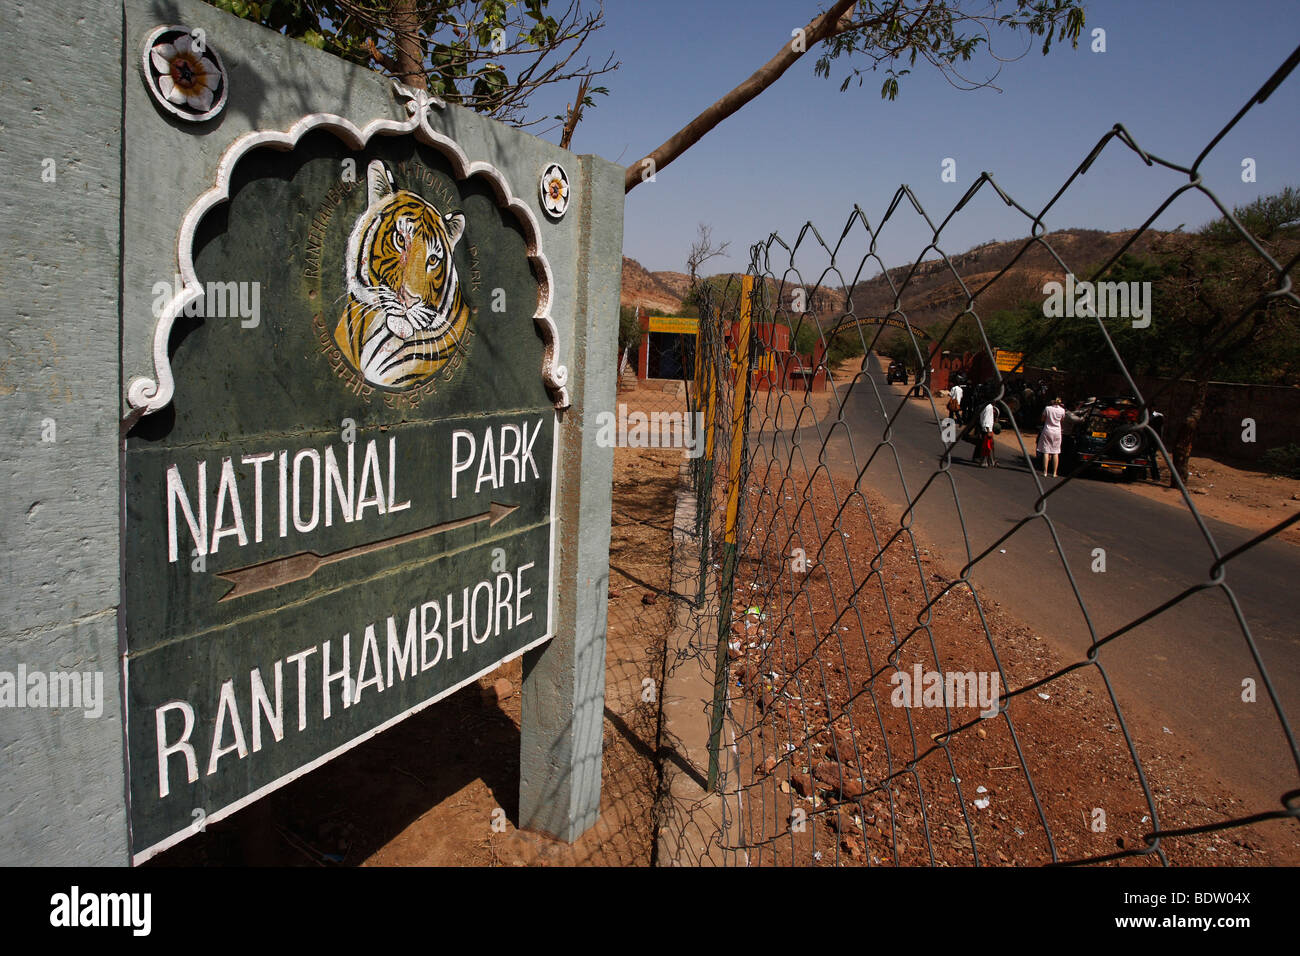 Impressionen aus Dem Ranthambore Nationalpark in Indien, Eindrücke von den Ranthambore Nationalpark in Indien Stockfoto